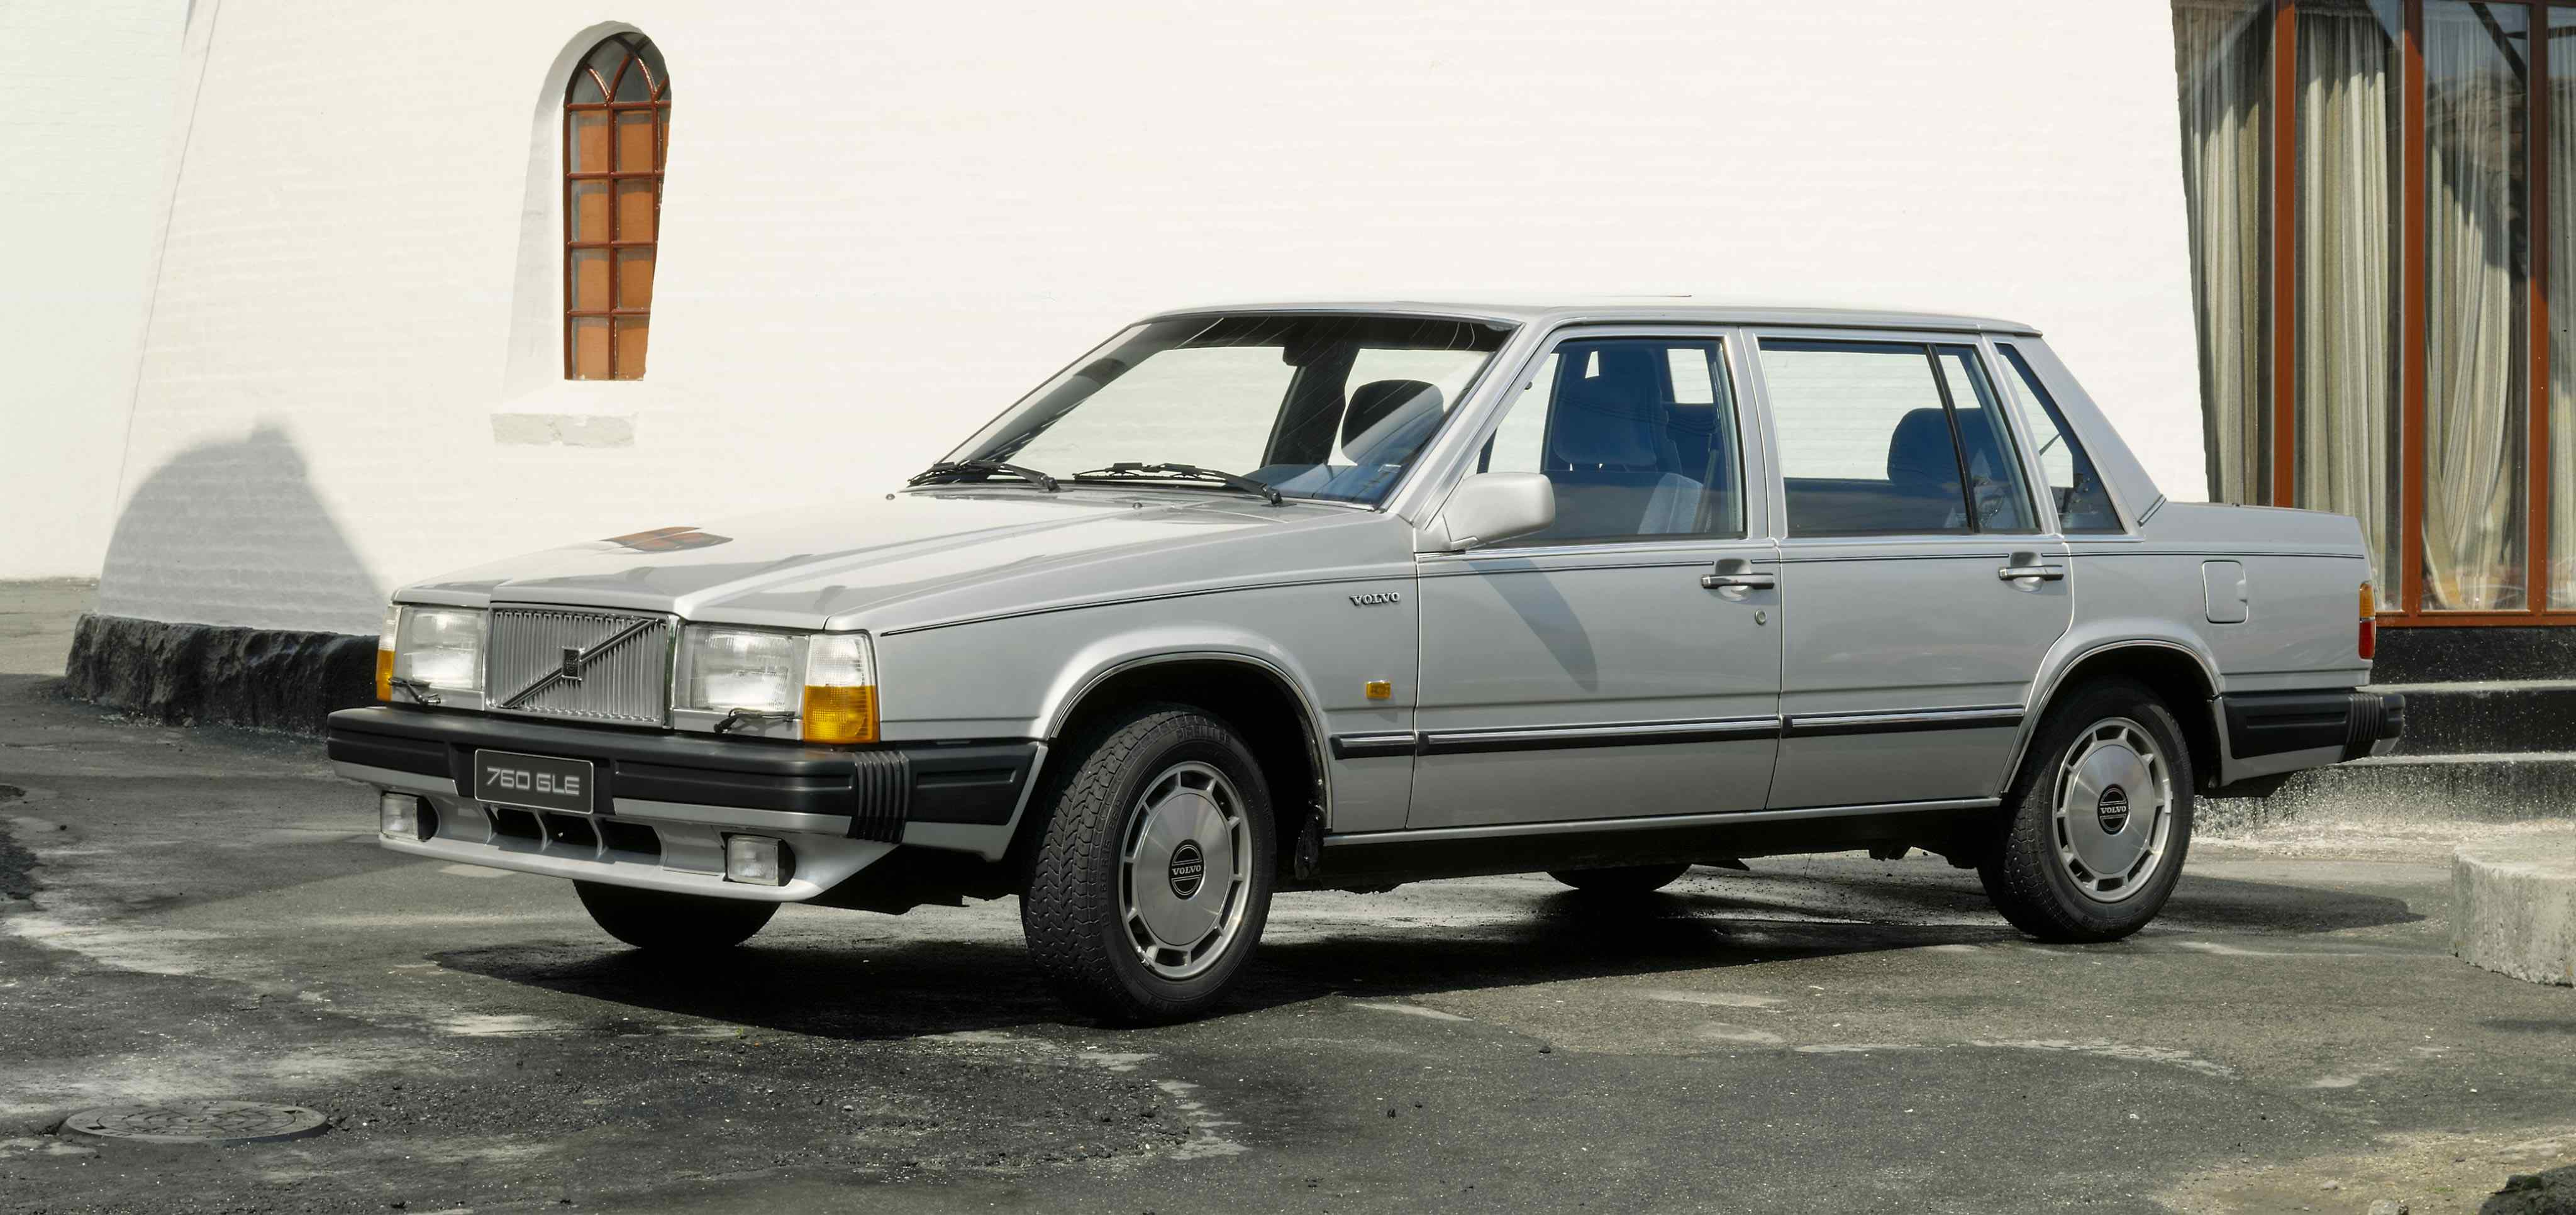 Gümüşü rəngli "Volvo" 760 sedan modeli ağ rəngli binanın qarşısında dayanıb